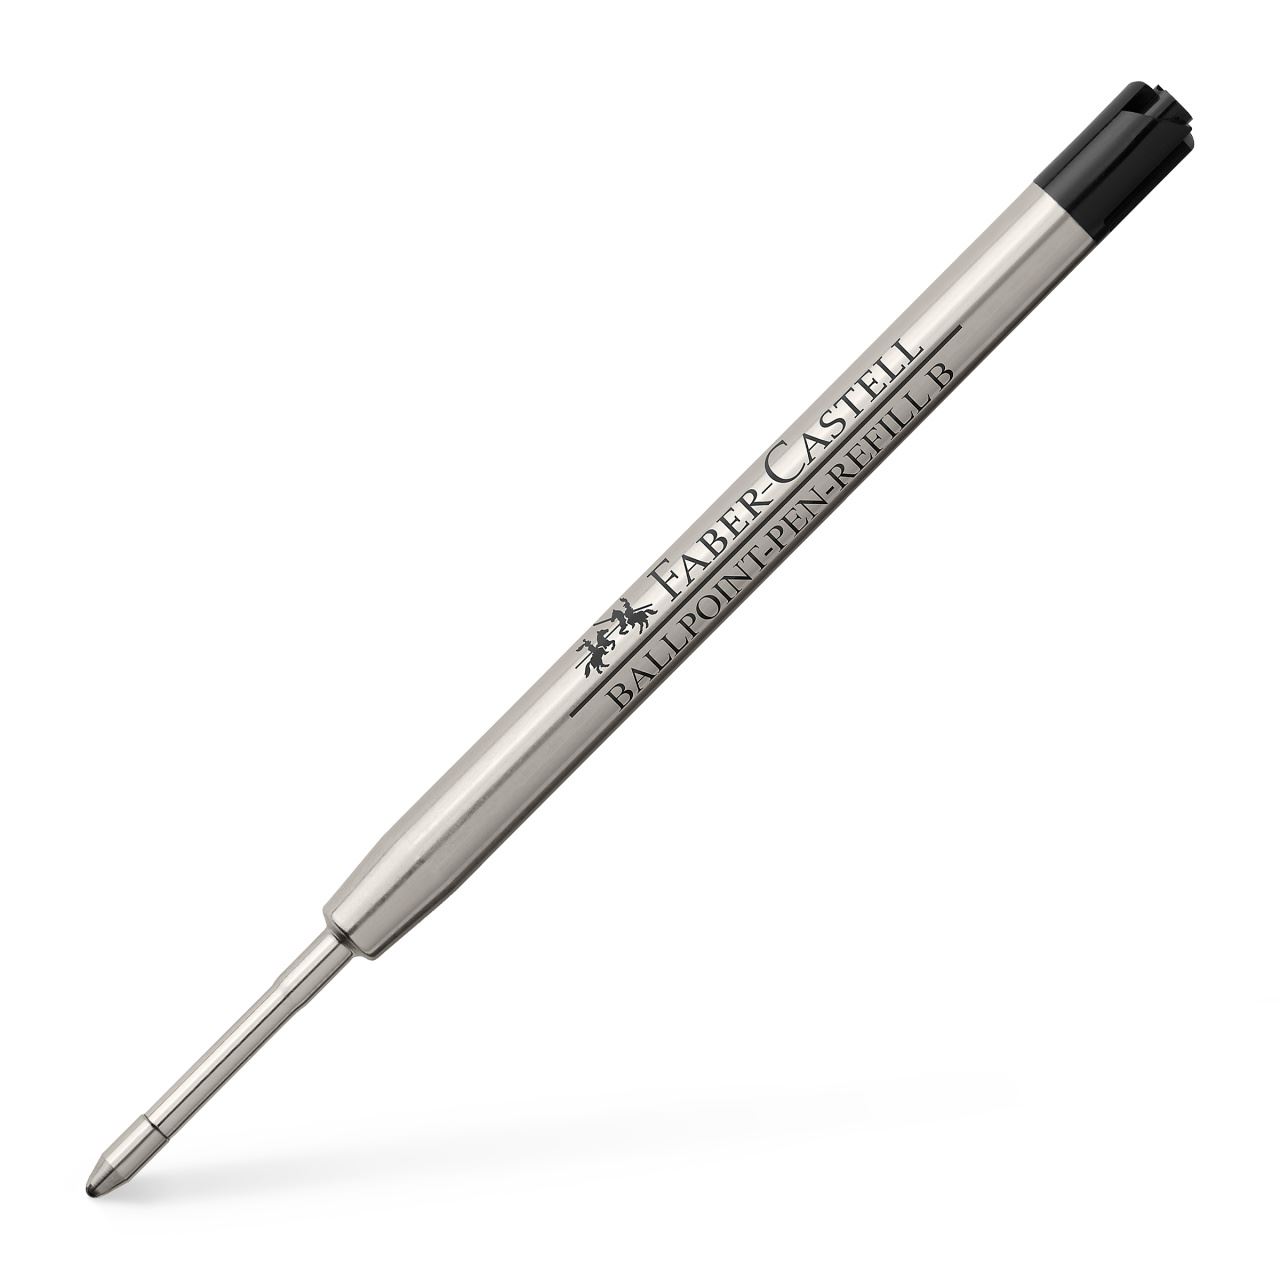 Faber-Castell - Refill per penna a sfera, nero punta broad